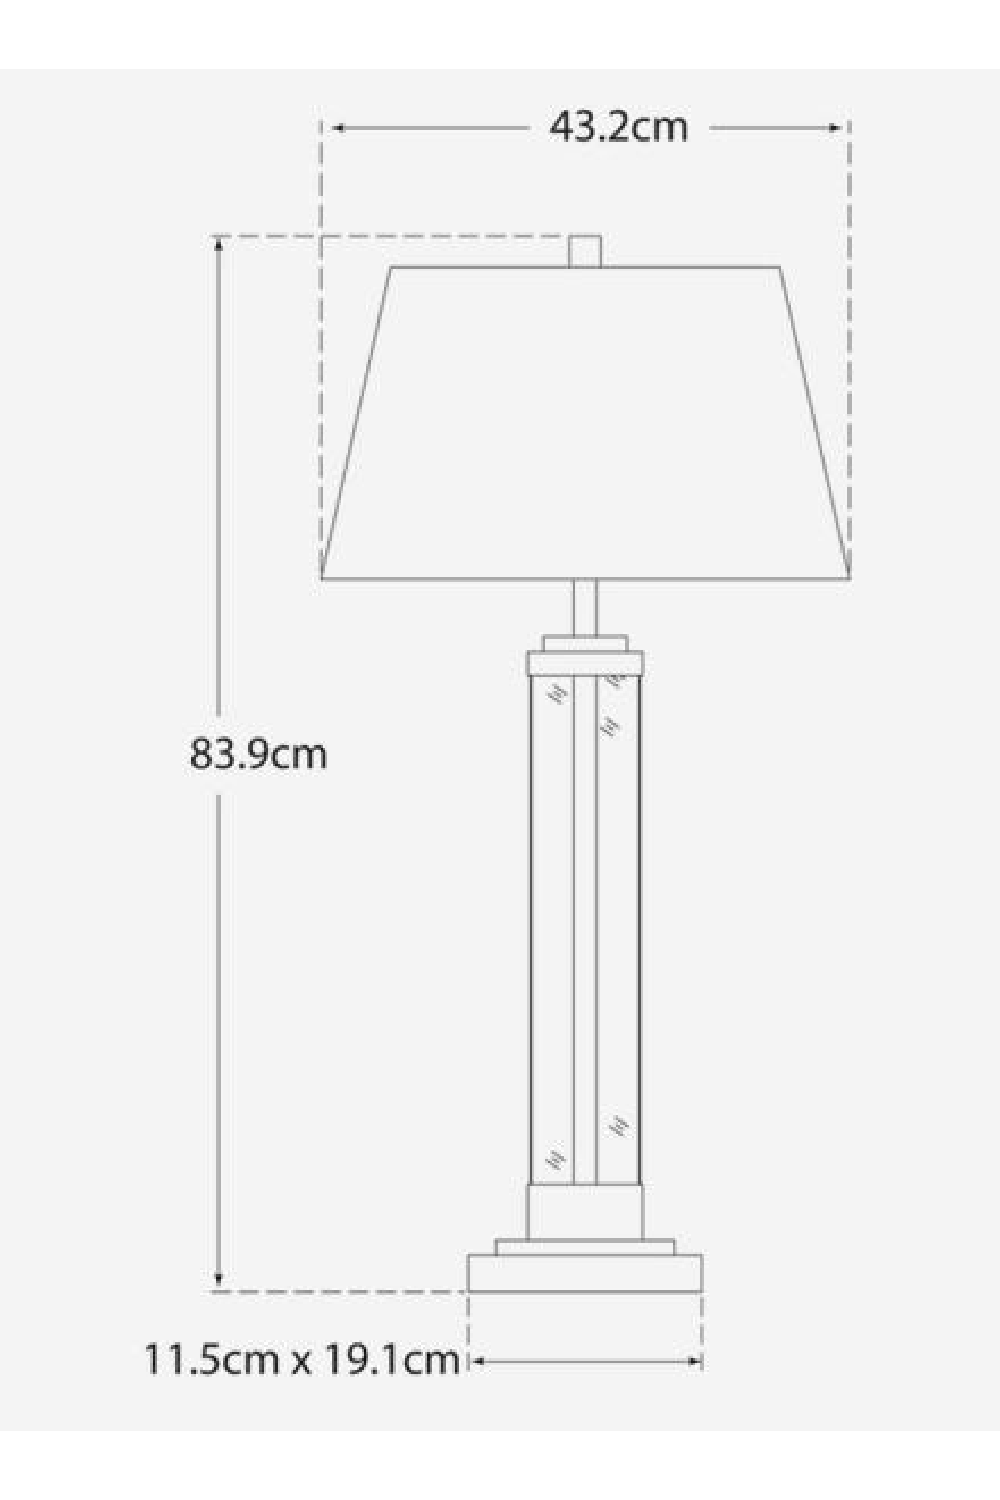 Glass Stemmed Modern Table Lamp | Andrew Martin Wright | OROA.com